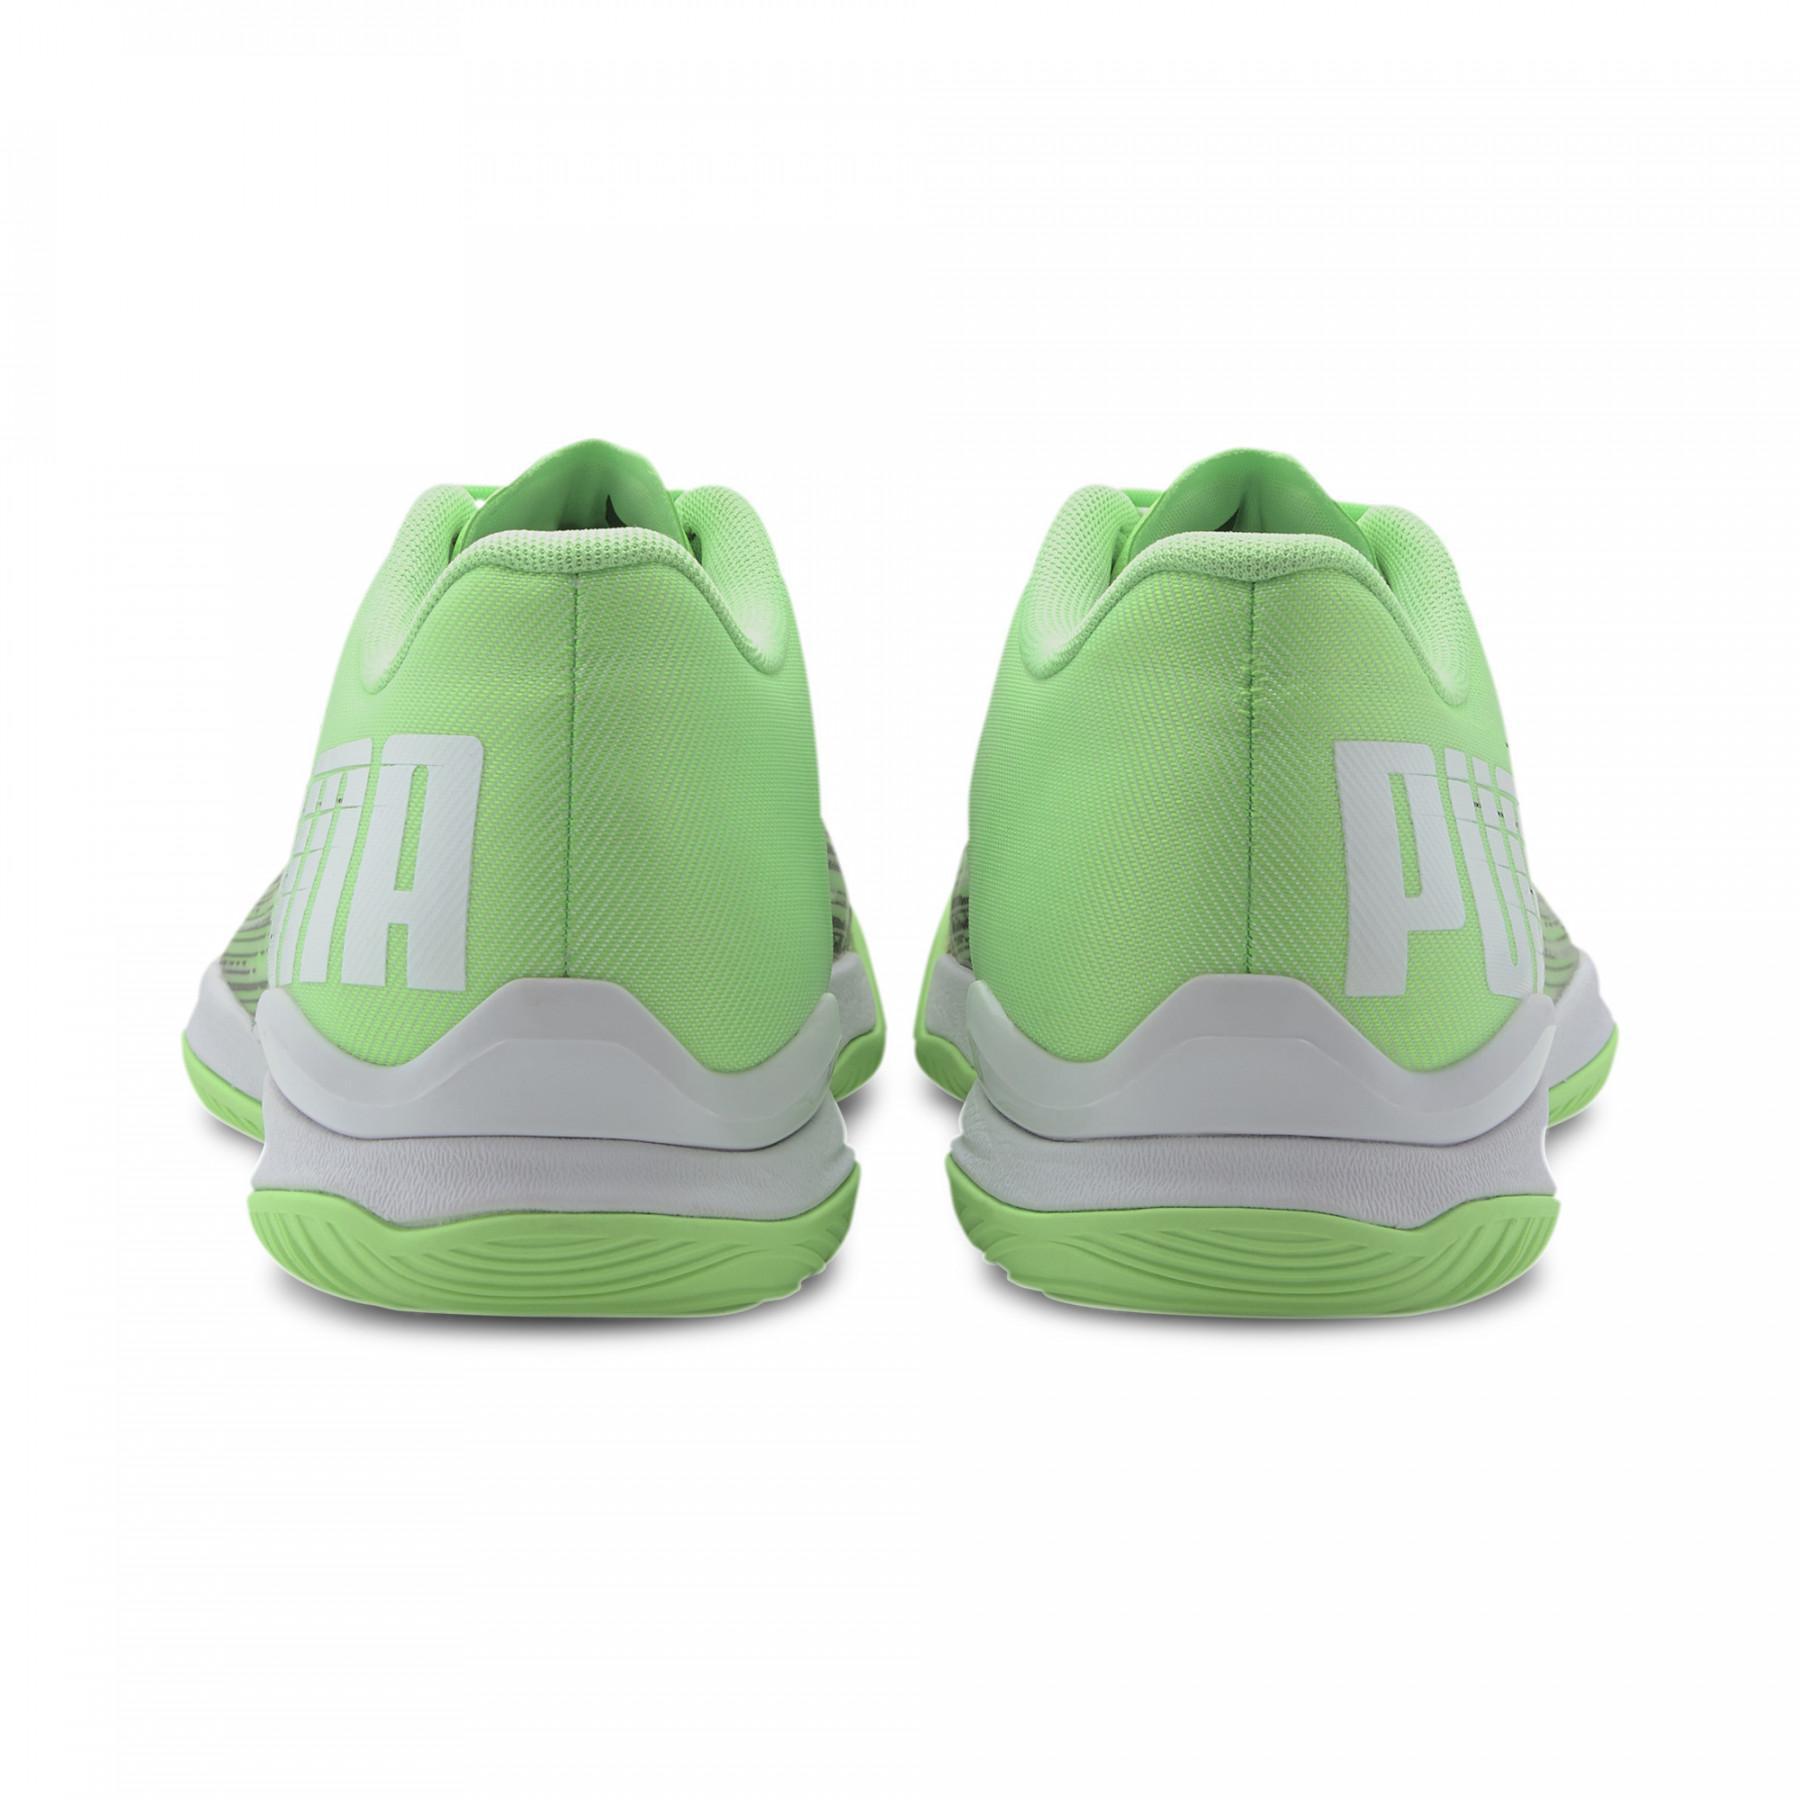 Schuhe Puma Adrenalite 2.1